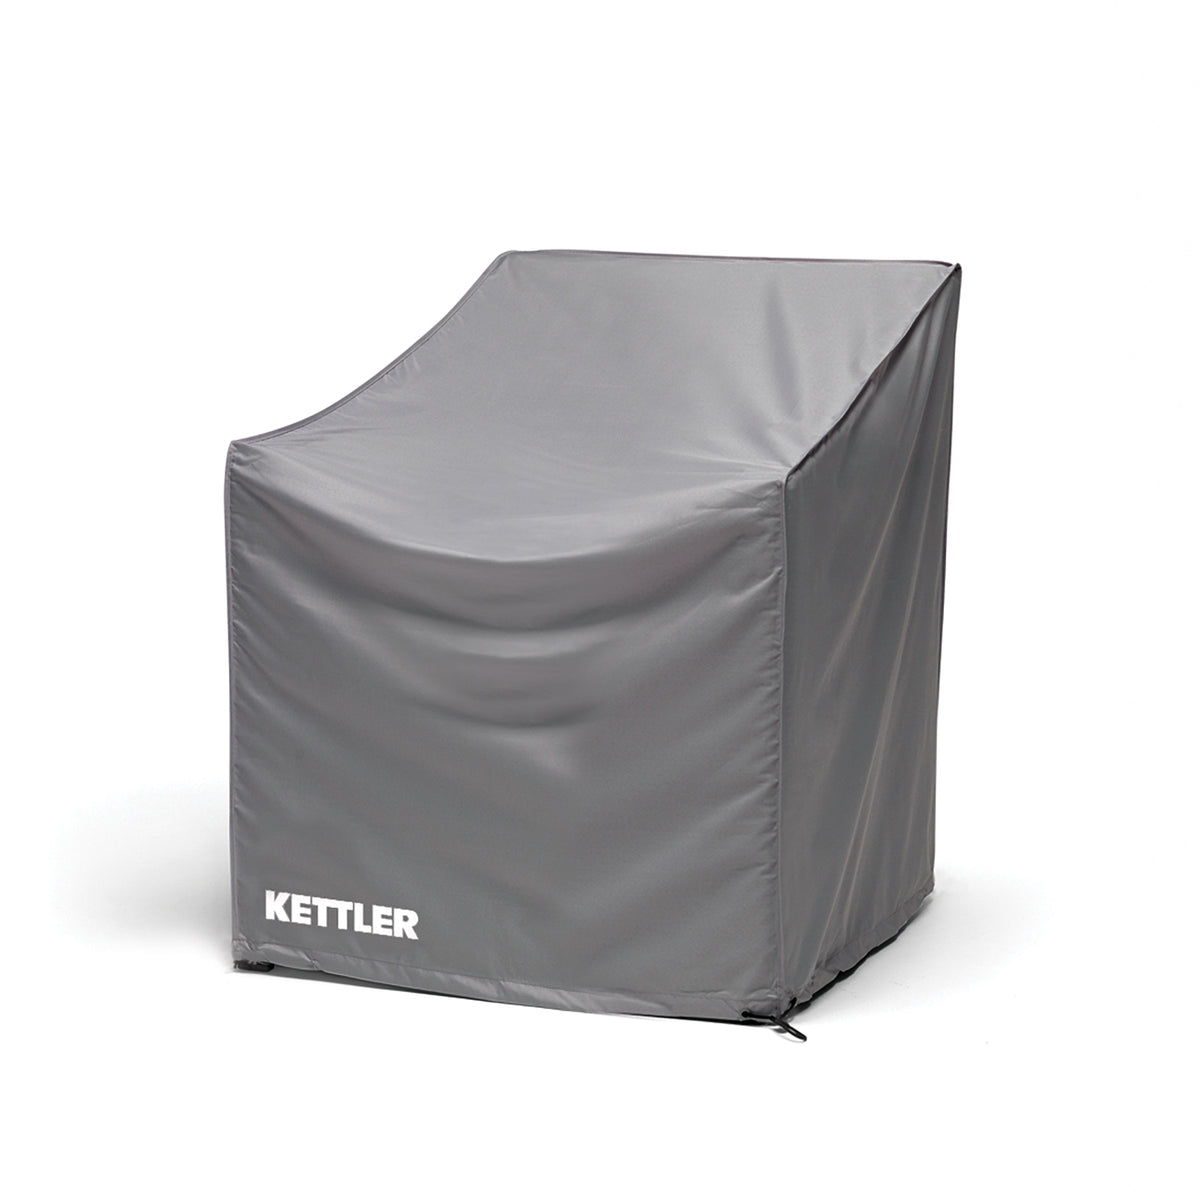 Kettler Elba Protective Garden Furniture Cover for Elba Grande Lounge Armchair